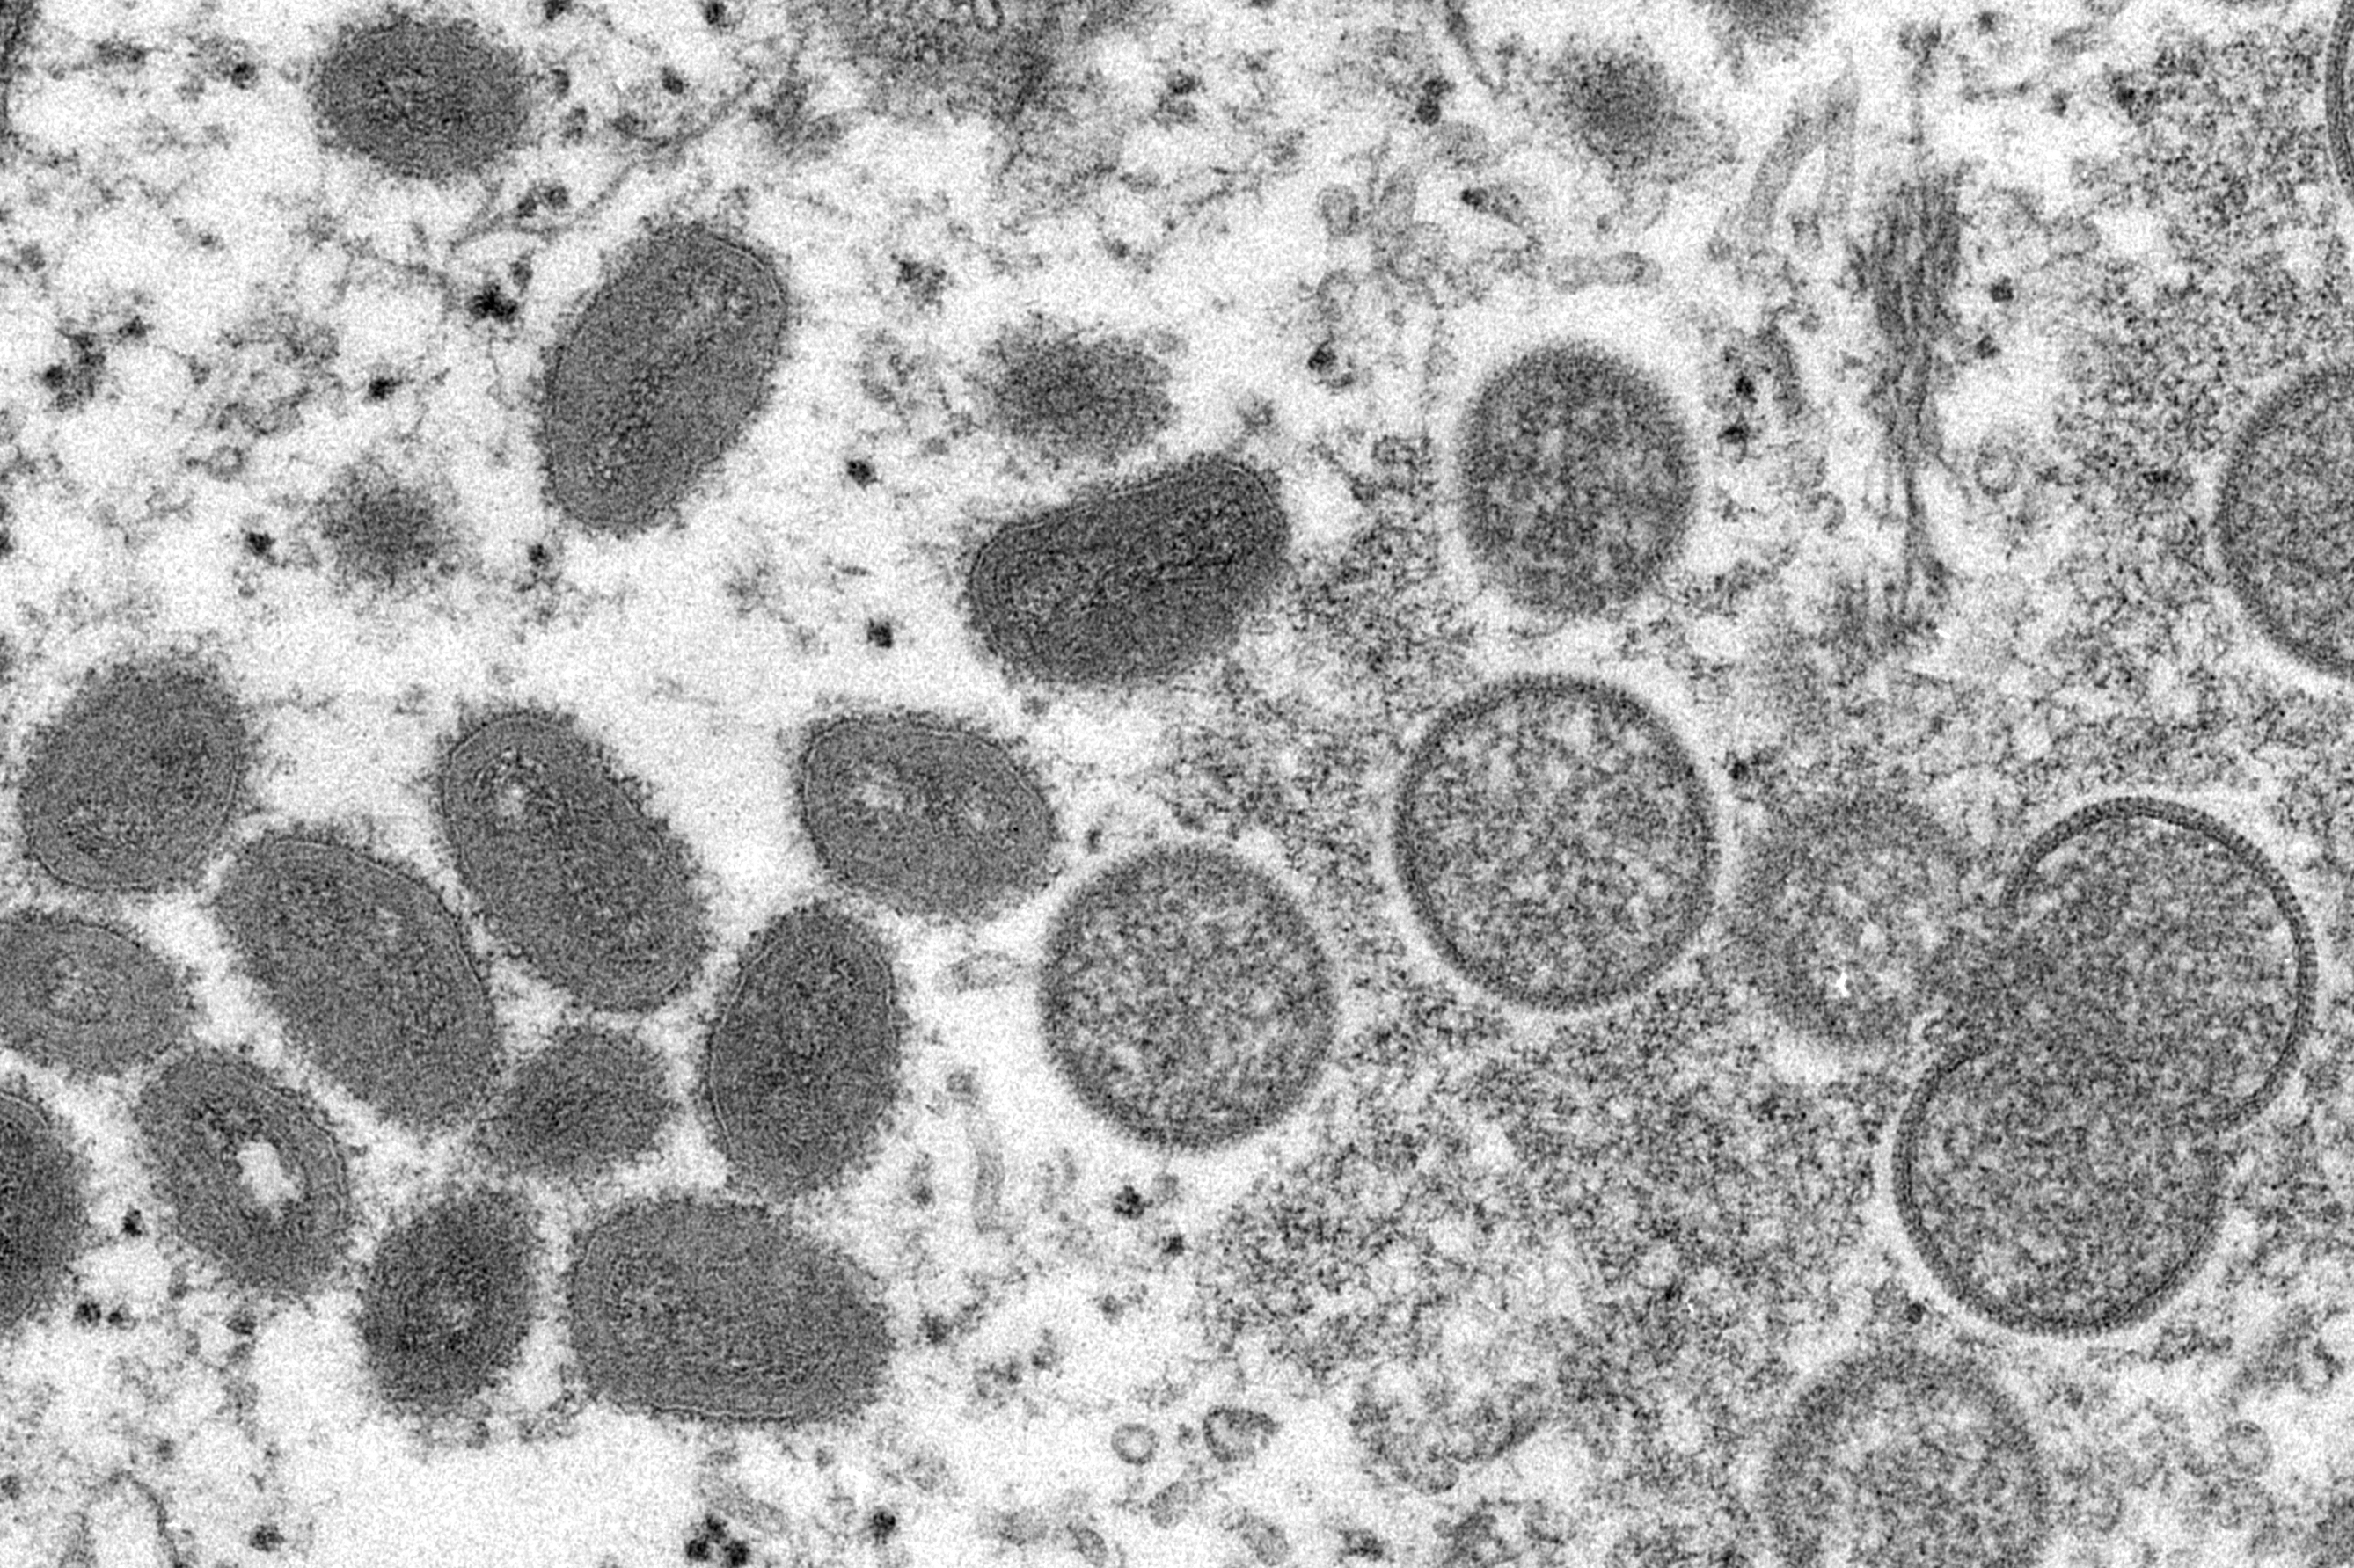 Imagen microscópica de una muestra de piel afectada por la viruela del mono en 2003.